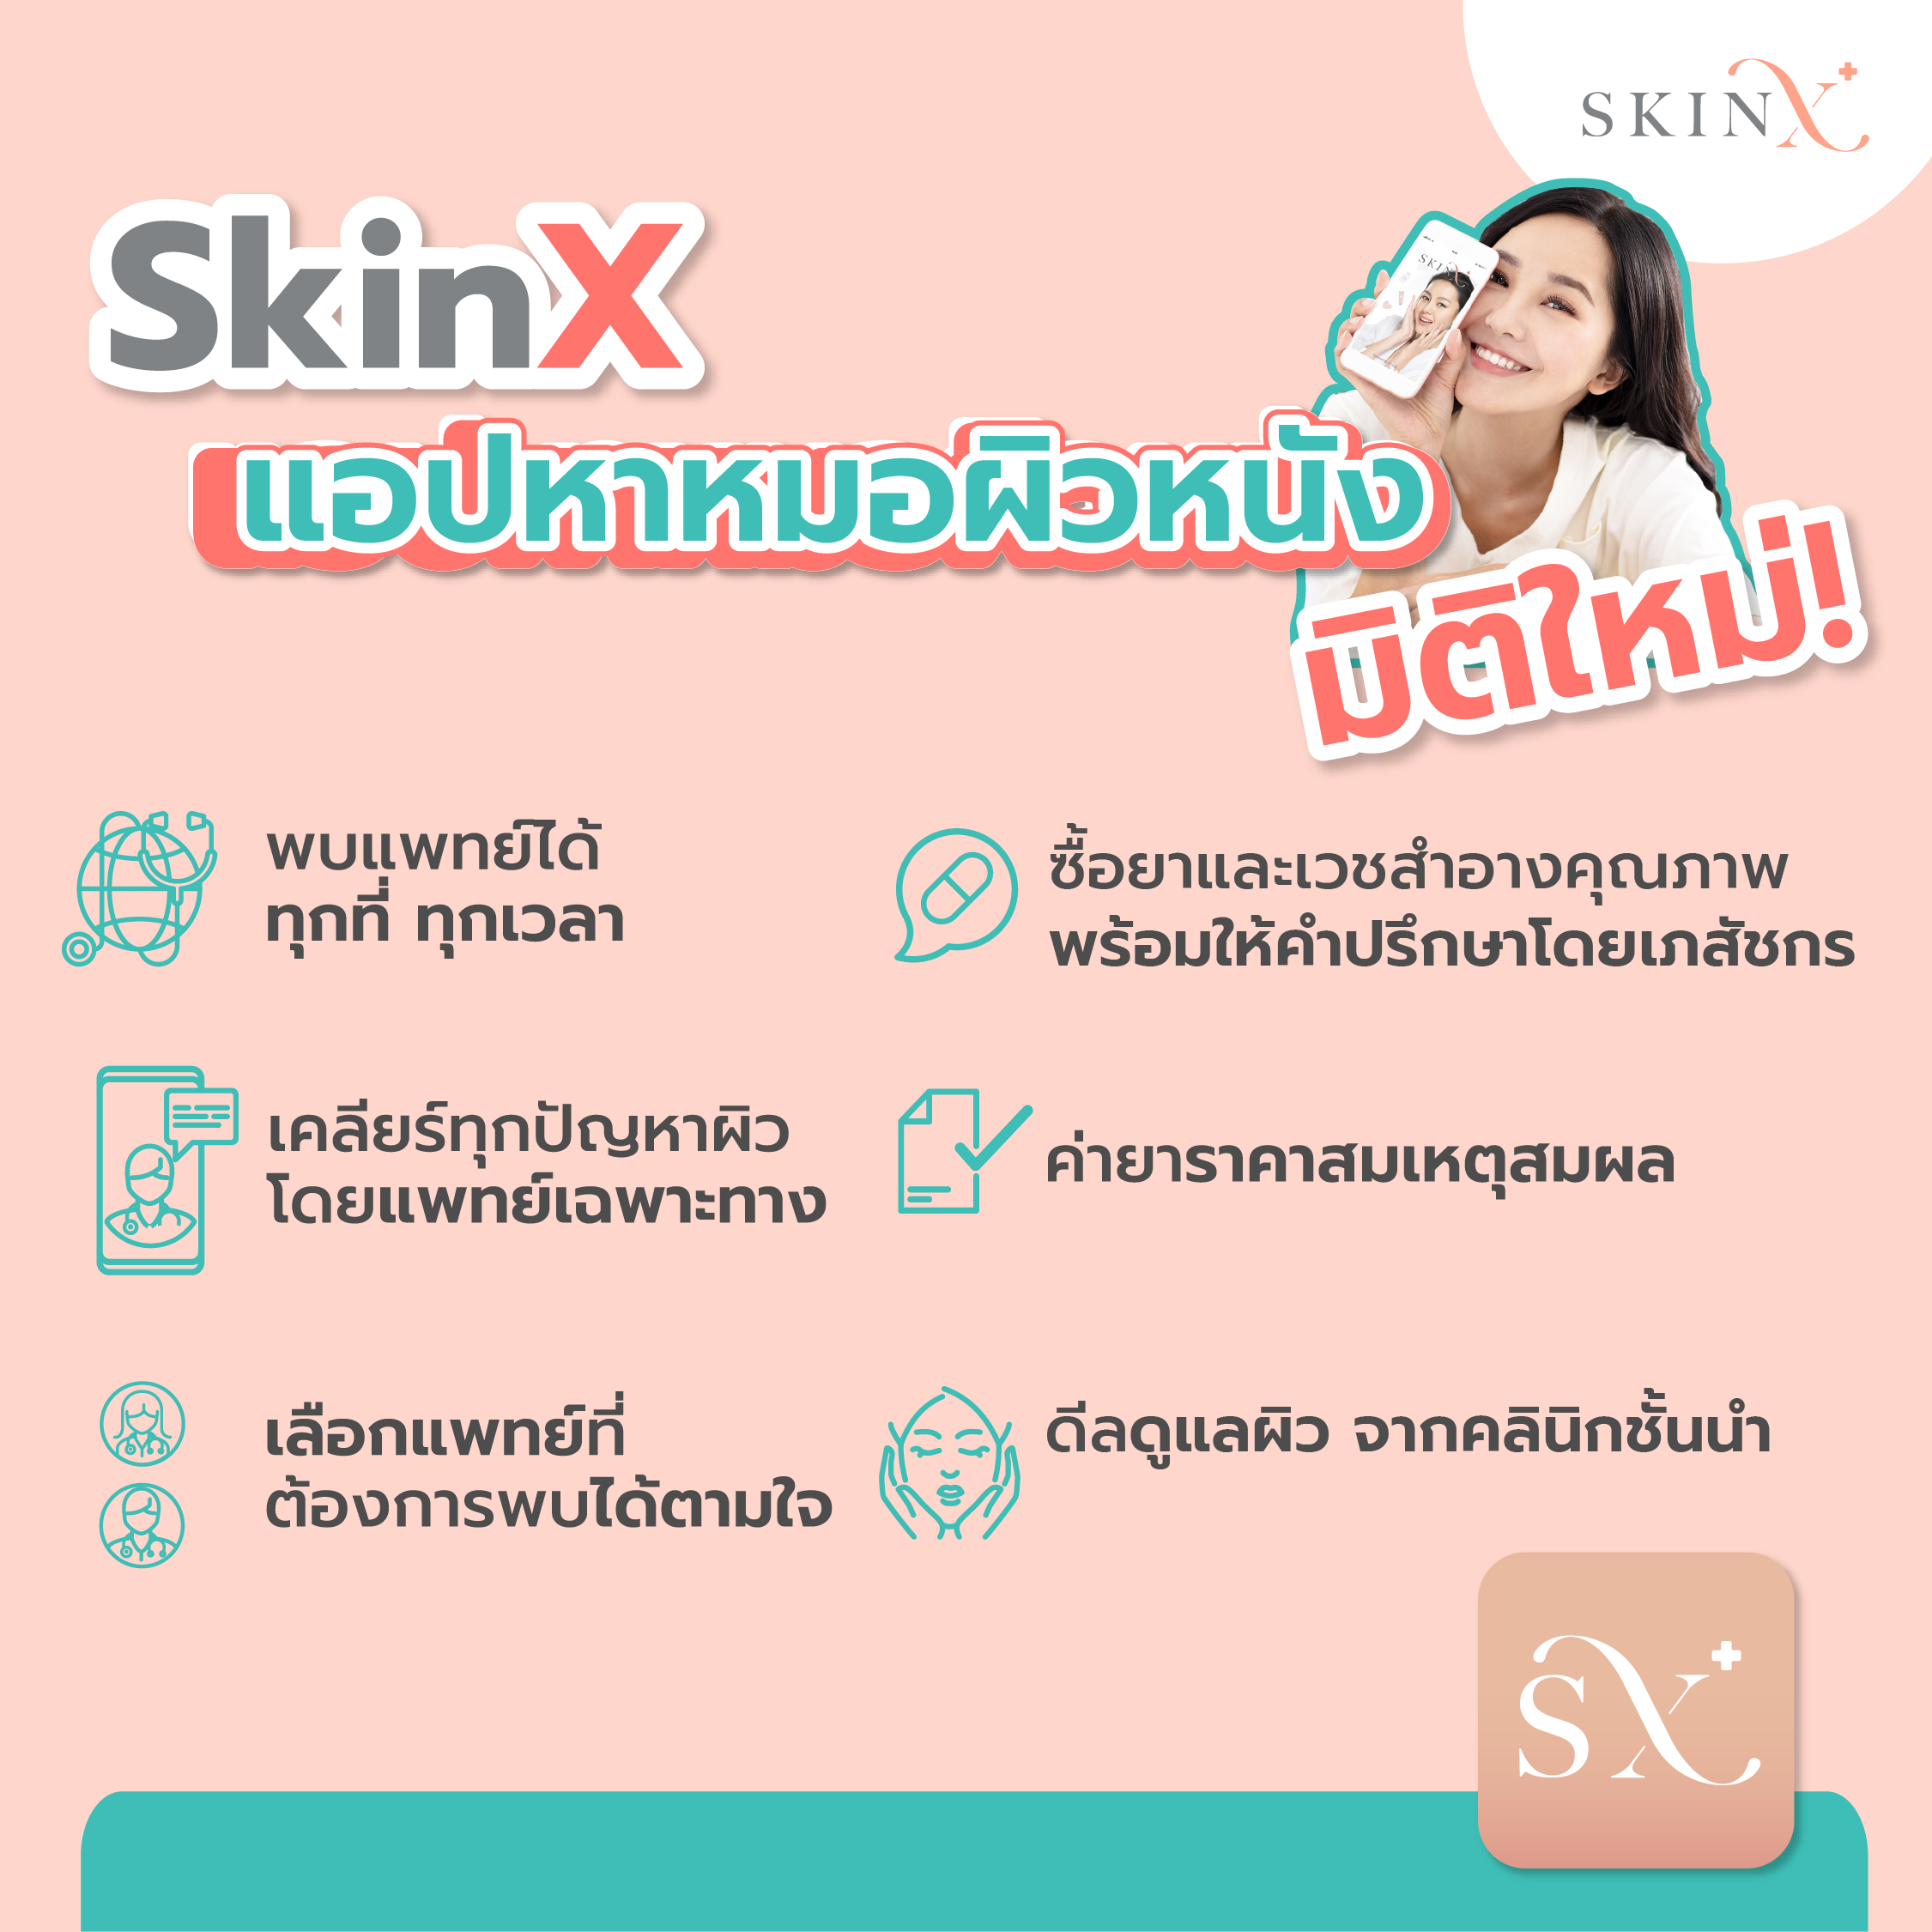 รูปภาพเพิ่มเติมของ SkinX E-Vo ส่วนลด 500 บาท สำหรับทุกการใช้จ่ายใน SkinX